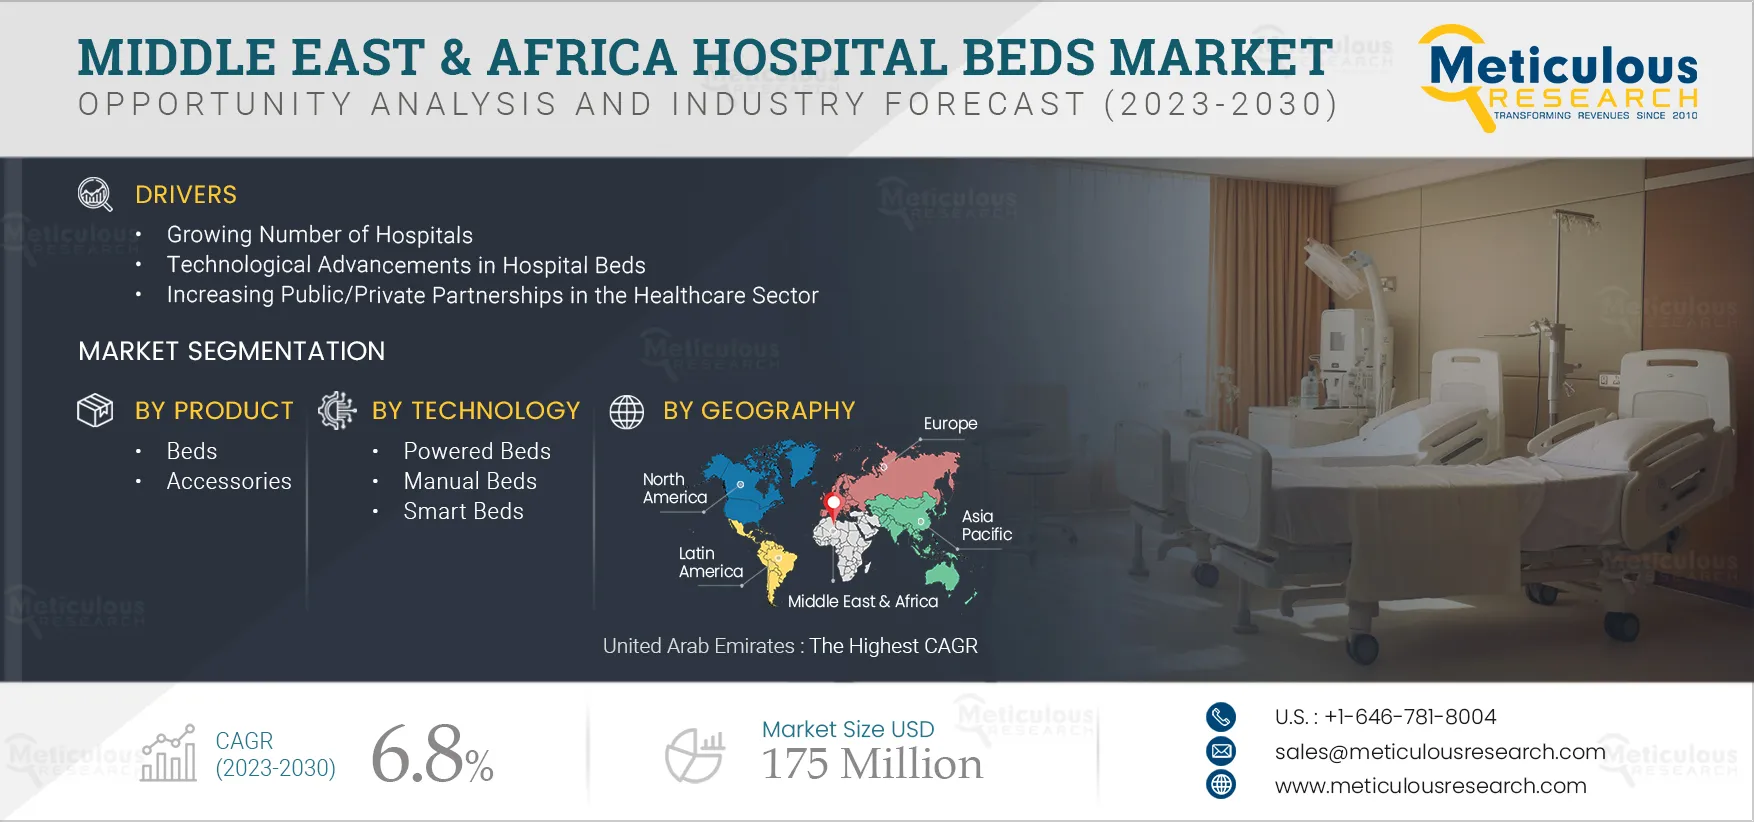  Middle East & Africa Hospital Beds Market 